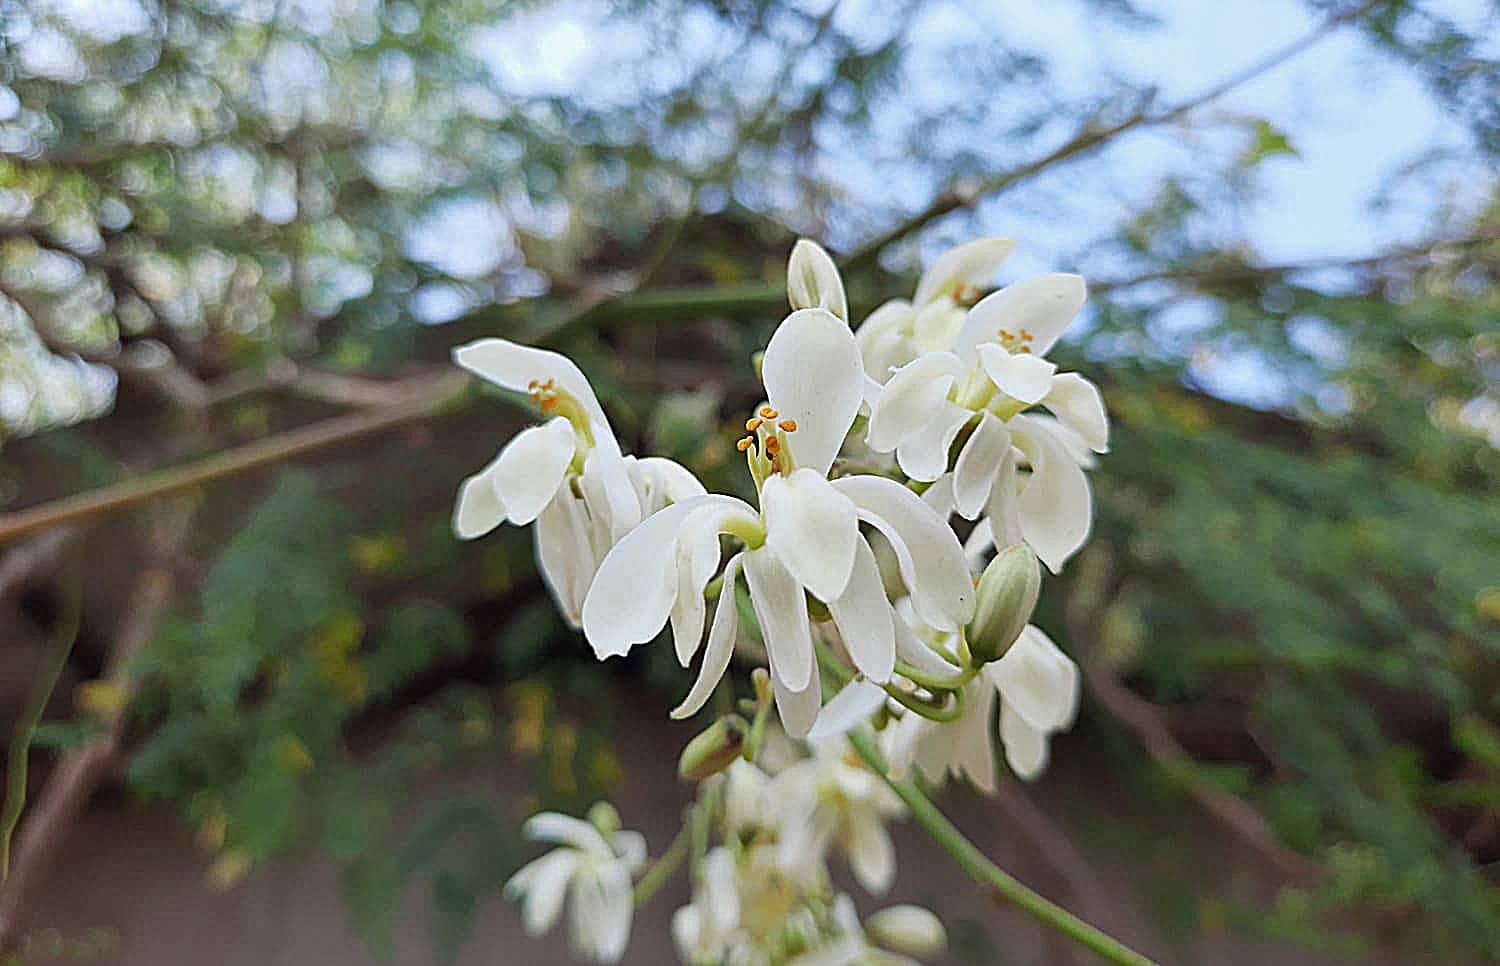 Moringa plant flower